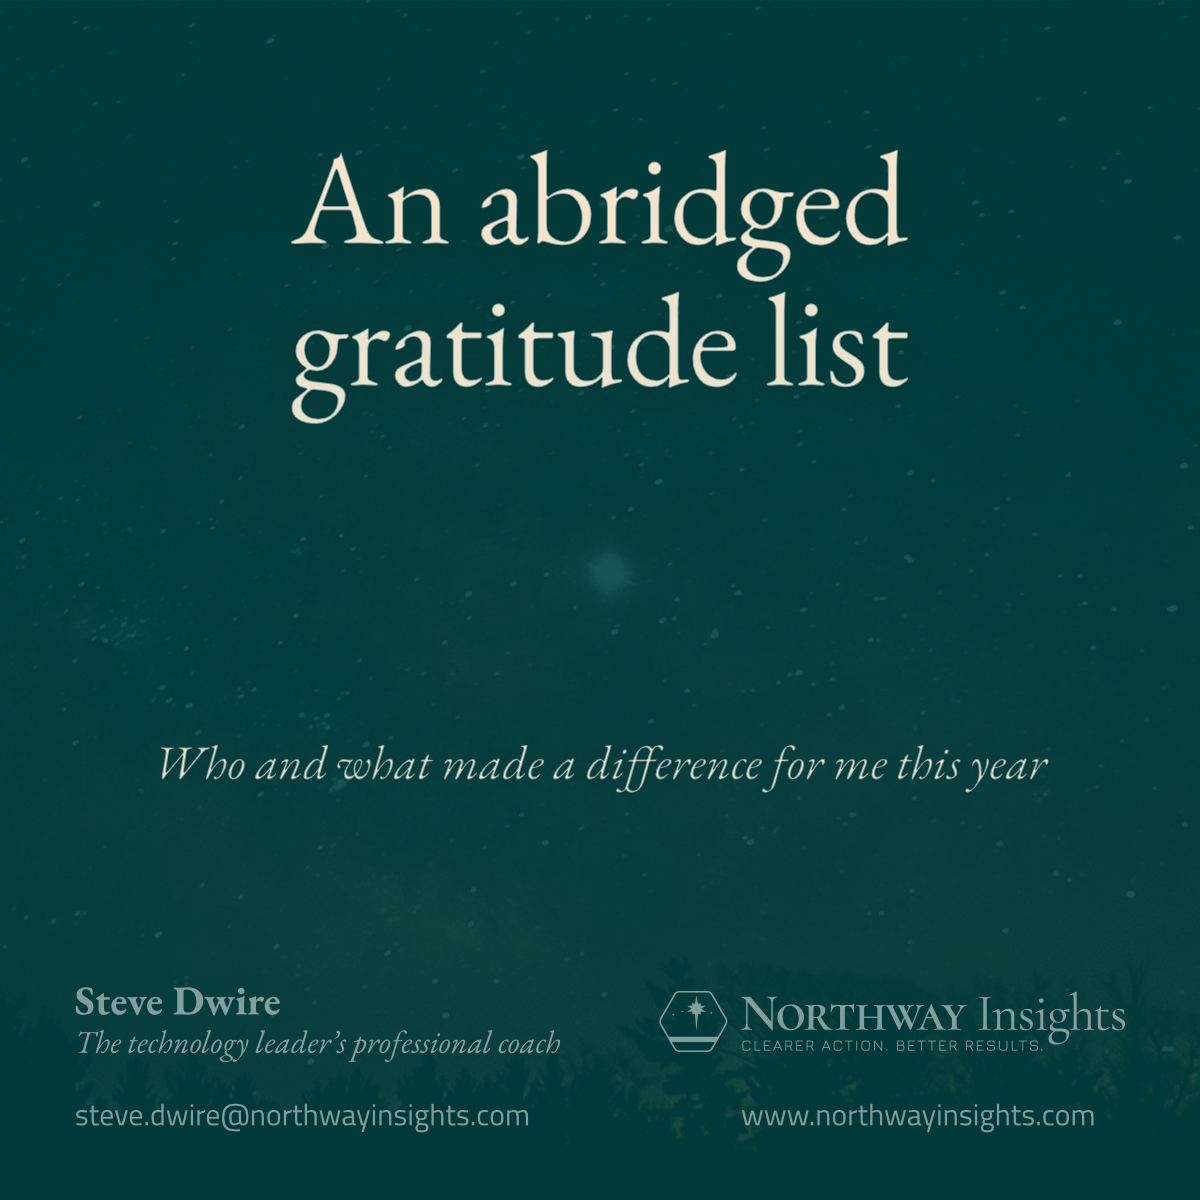 An abridged gratitude list